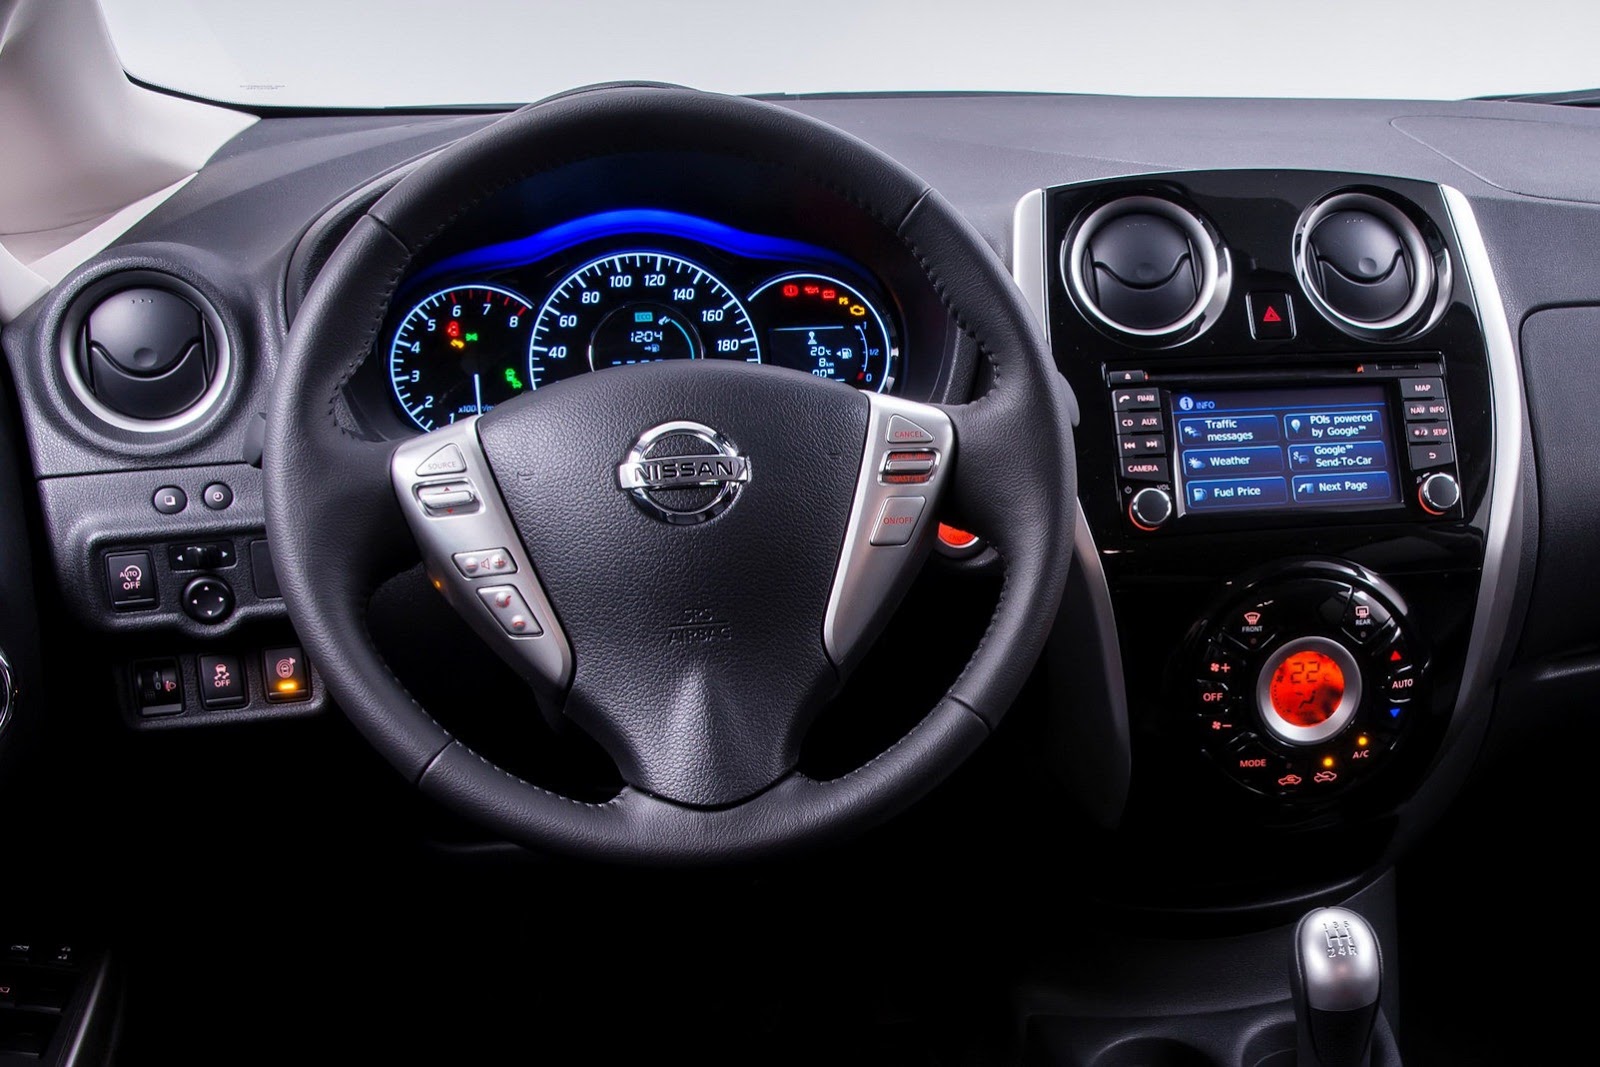 2014 Nissan Note Interior Dashboard View